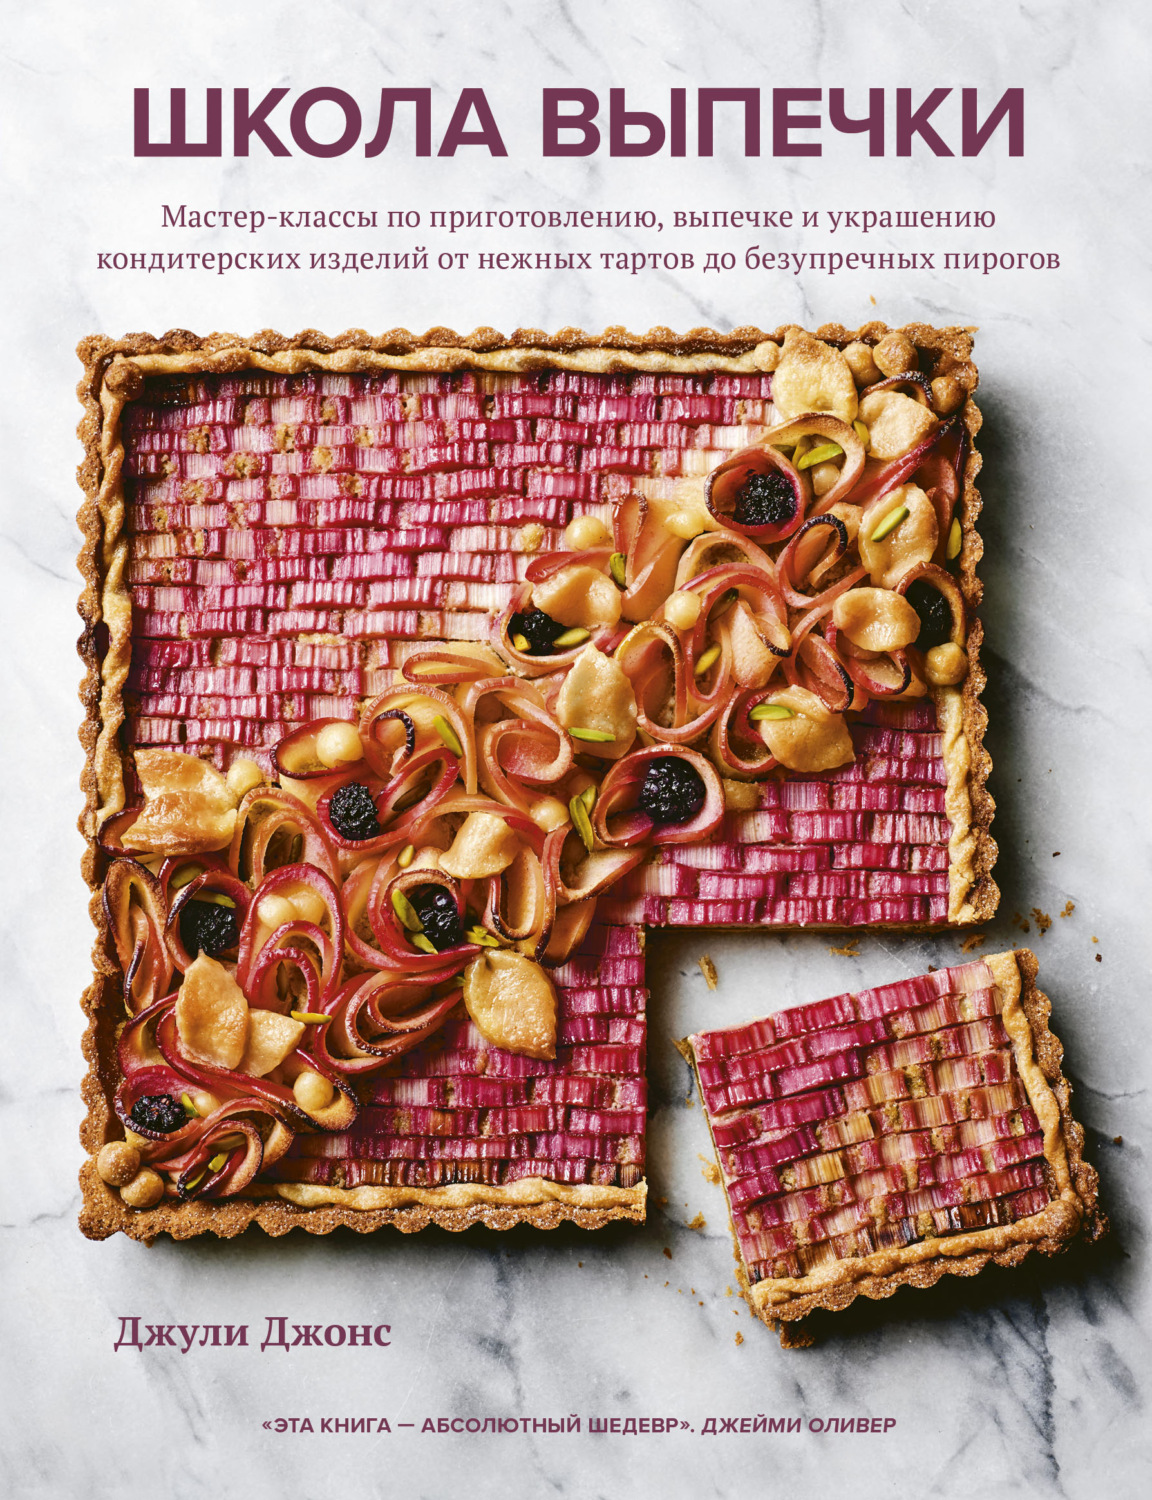 Книги рецепты: выпечка и десерты – купить литературу с рецептами в интернет-магазине Bookru